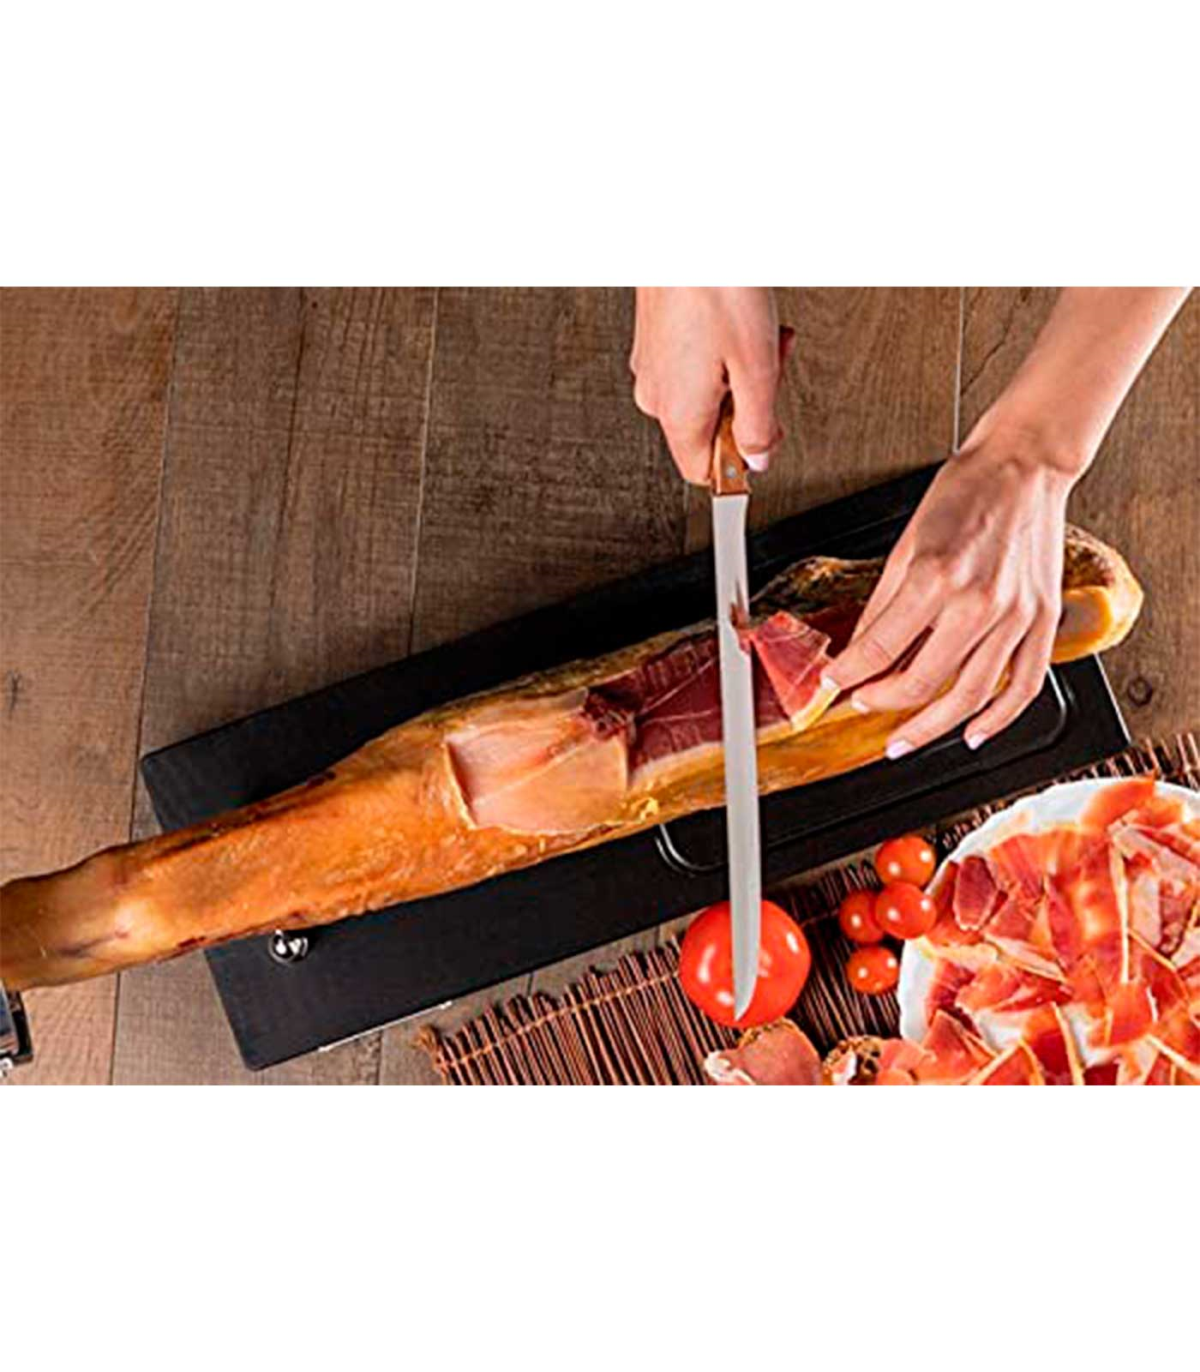 Tradineur - Cuchillo jamonero con hoja de acero inoxidable y mango de  madera, cuchillo cortado de jamón, corte preciso, profesio